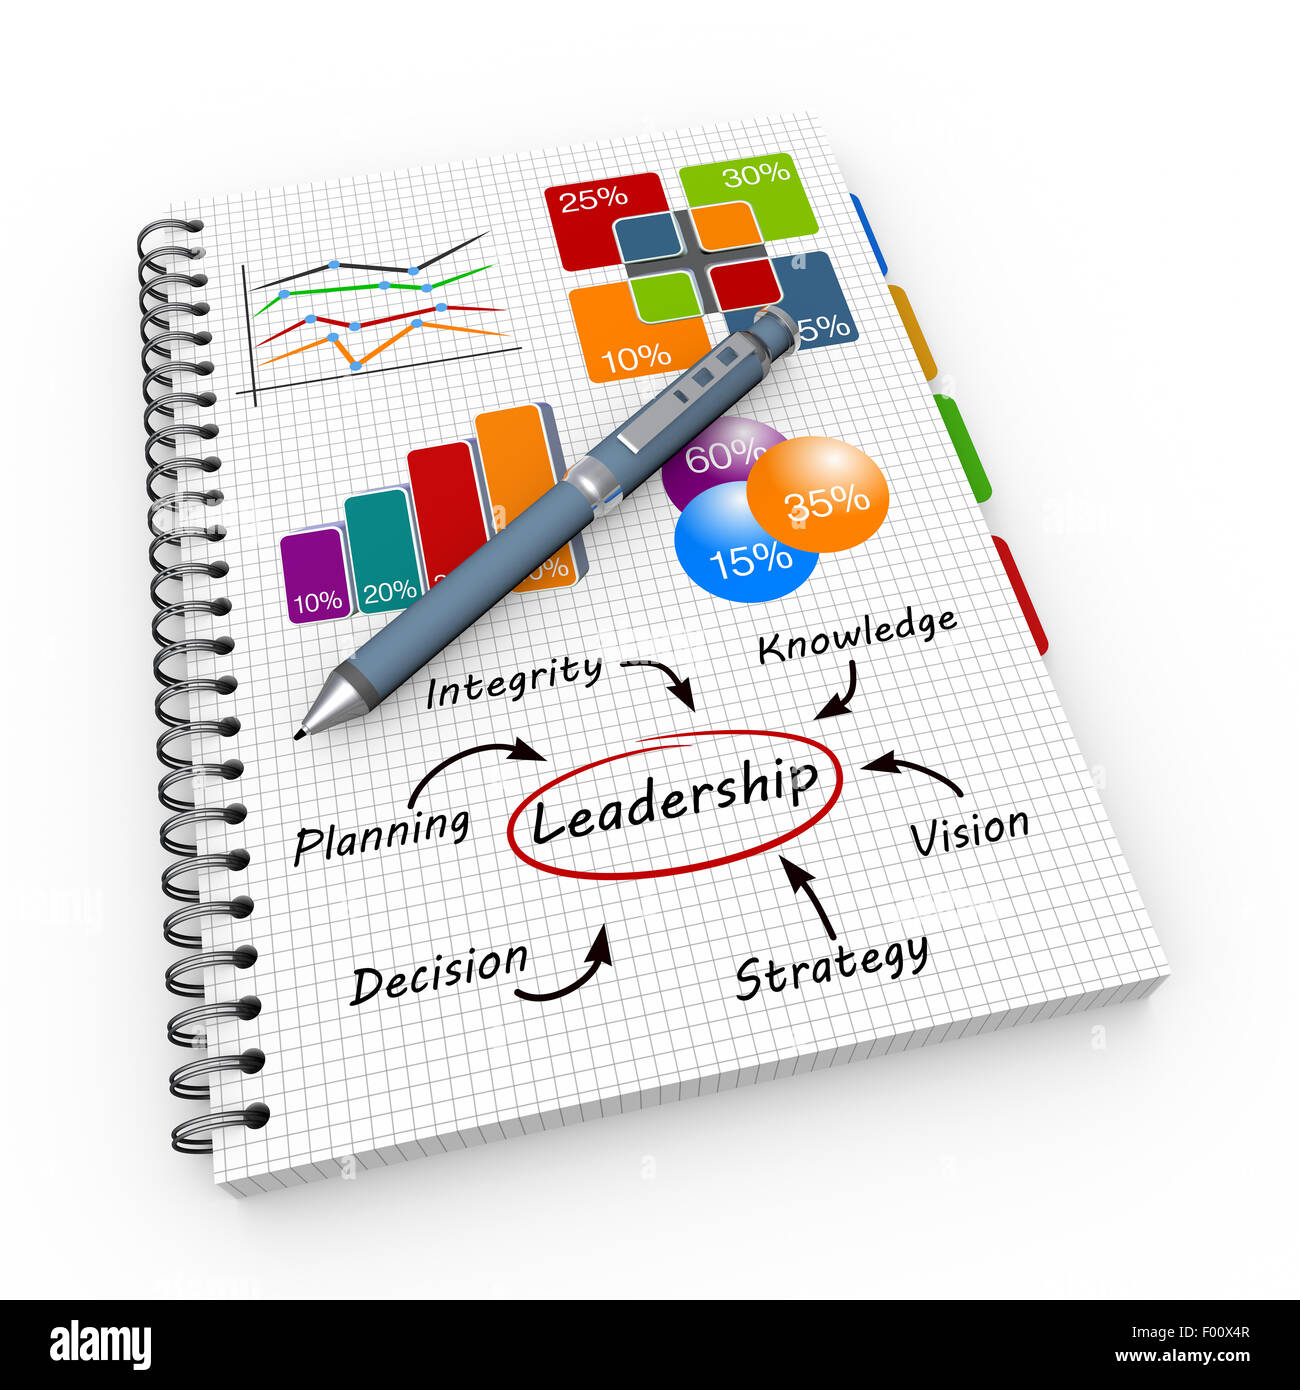 Concept de leadership illustration design sur un ordinateur portable Banque D'Images